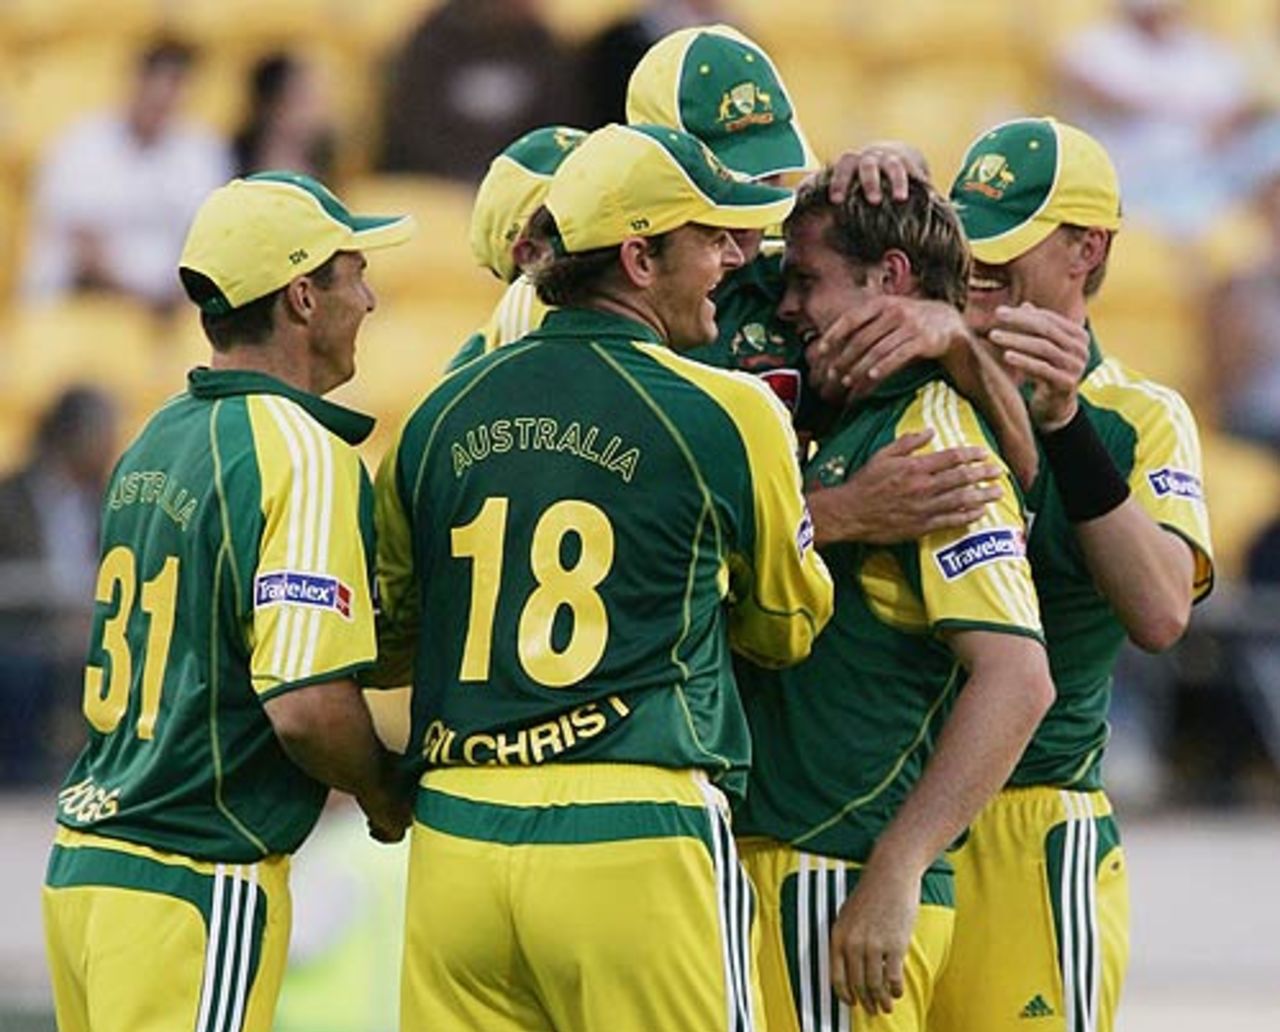 Mick Lewis celebrates after dismissing Lou Vincent, New Zealand v Australia, 2nd ODI, Wellington, December 7, 2005